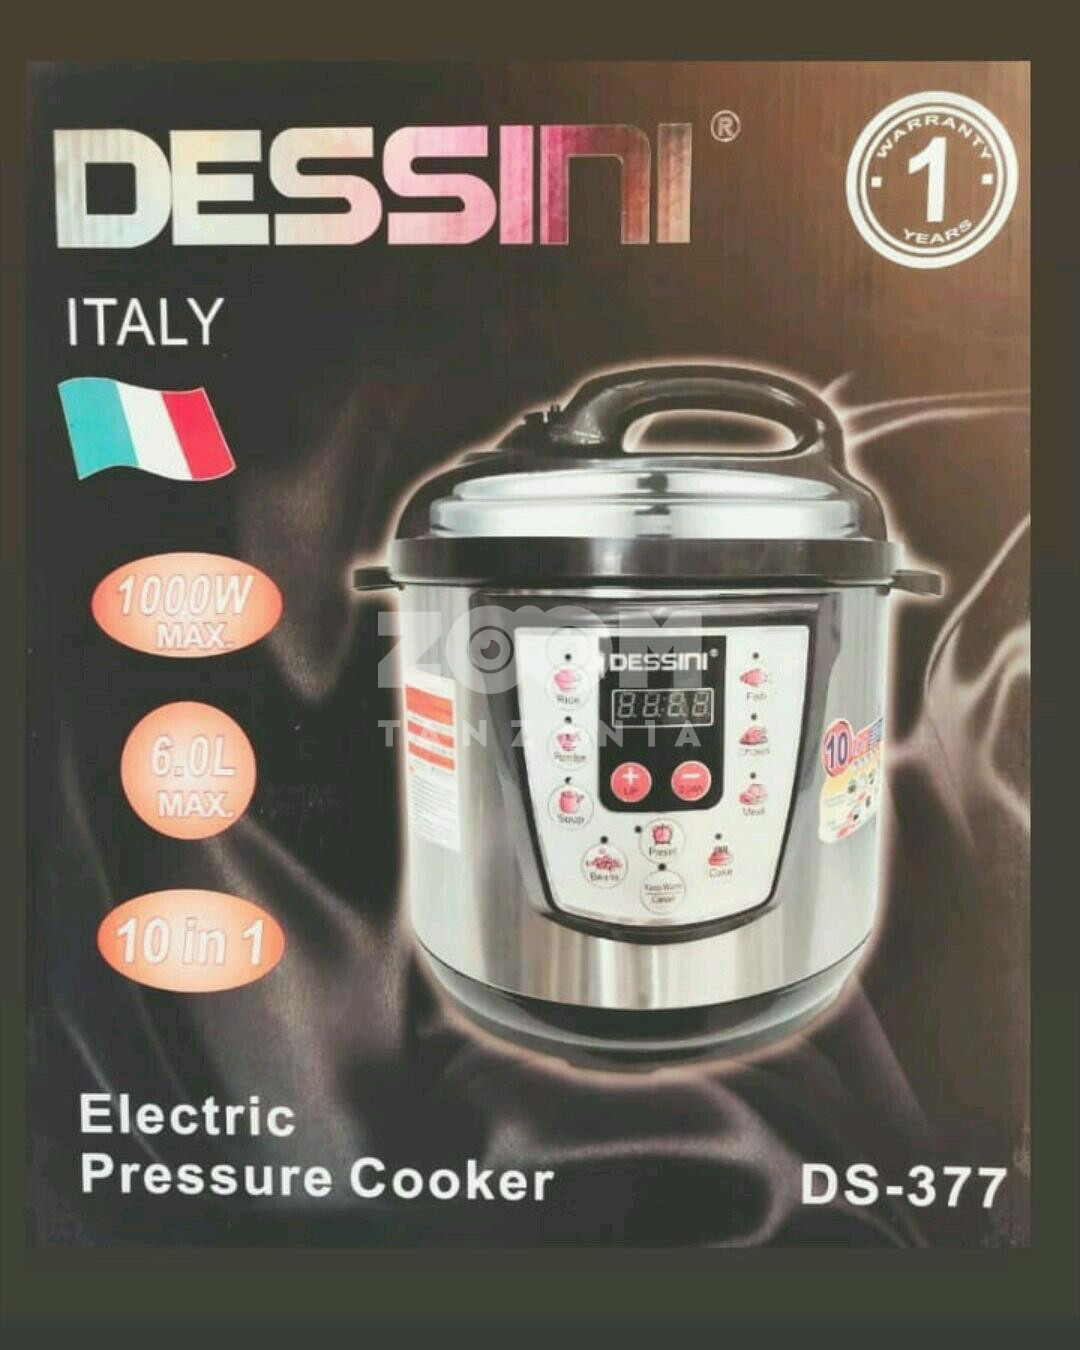 dessini electric pressure cooker